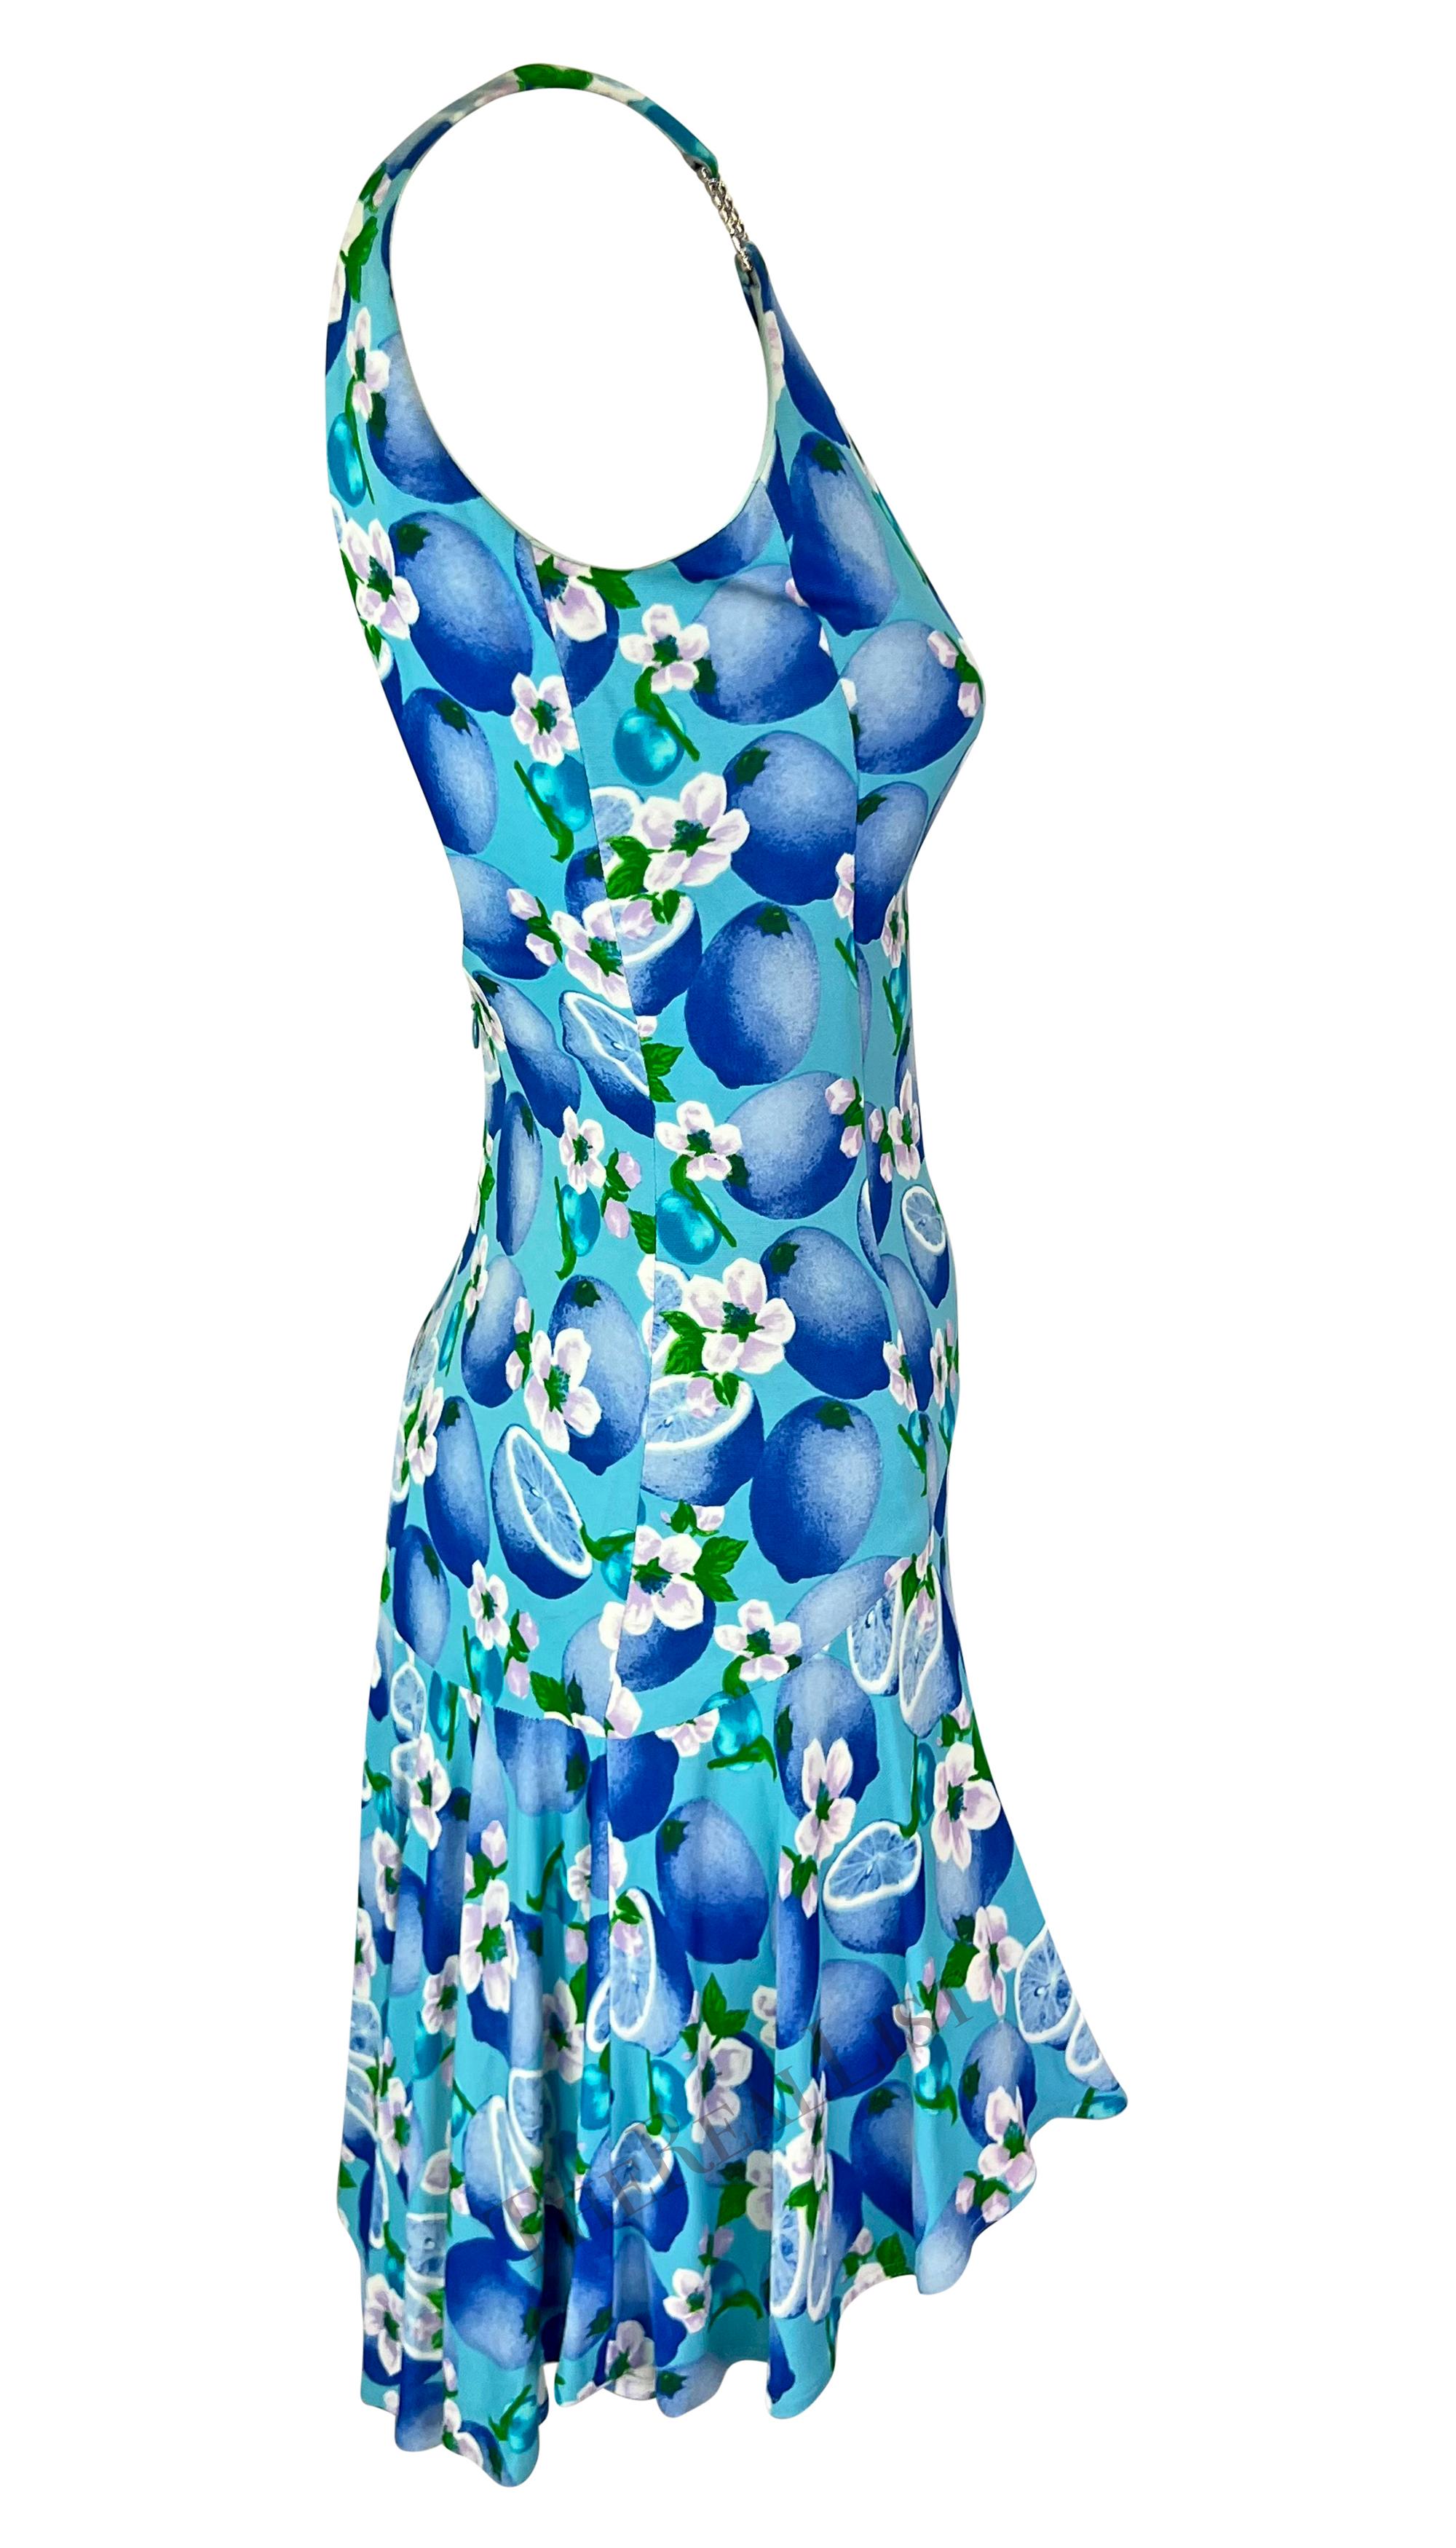 S/S 1995 Gianni Versace Light Blue Cirtus Print Mini Dress 3